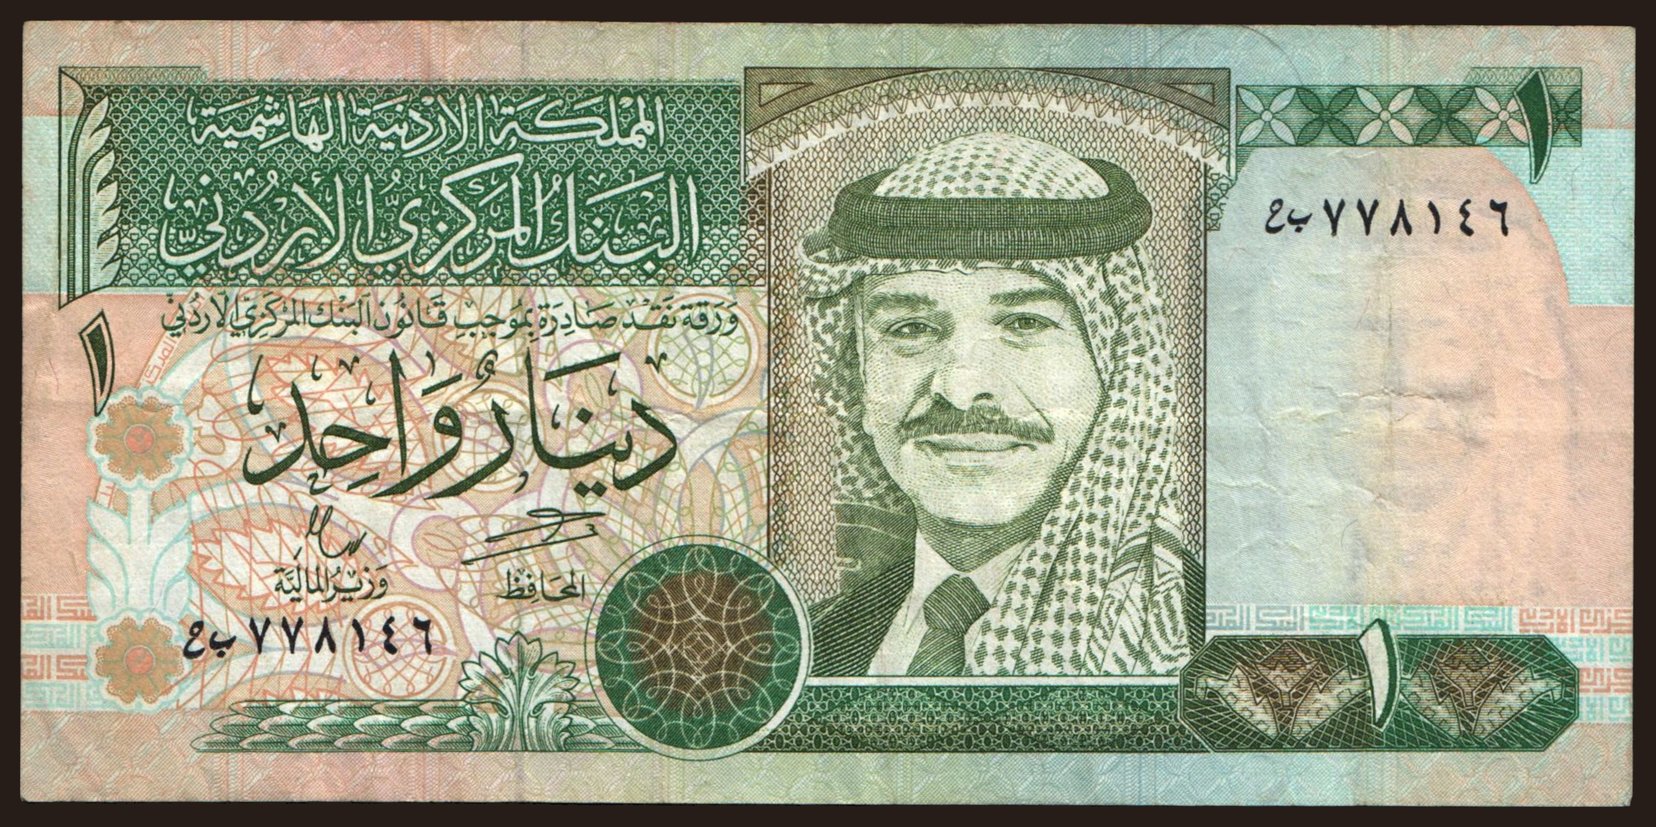 1 dinar, 1996